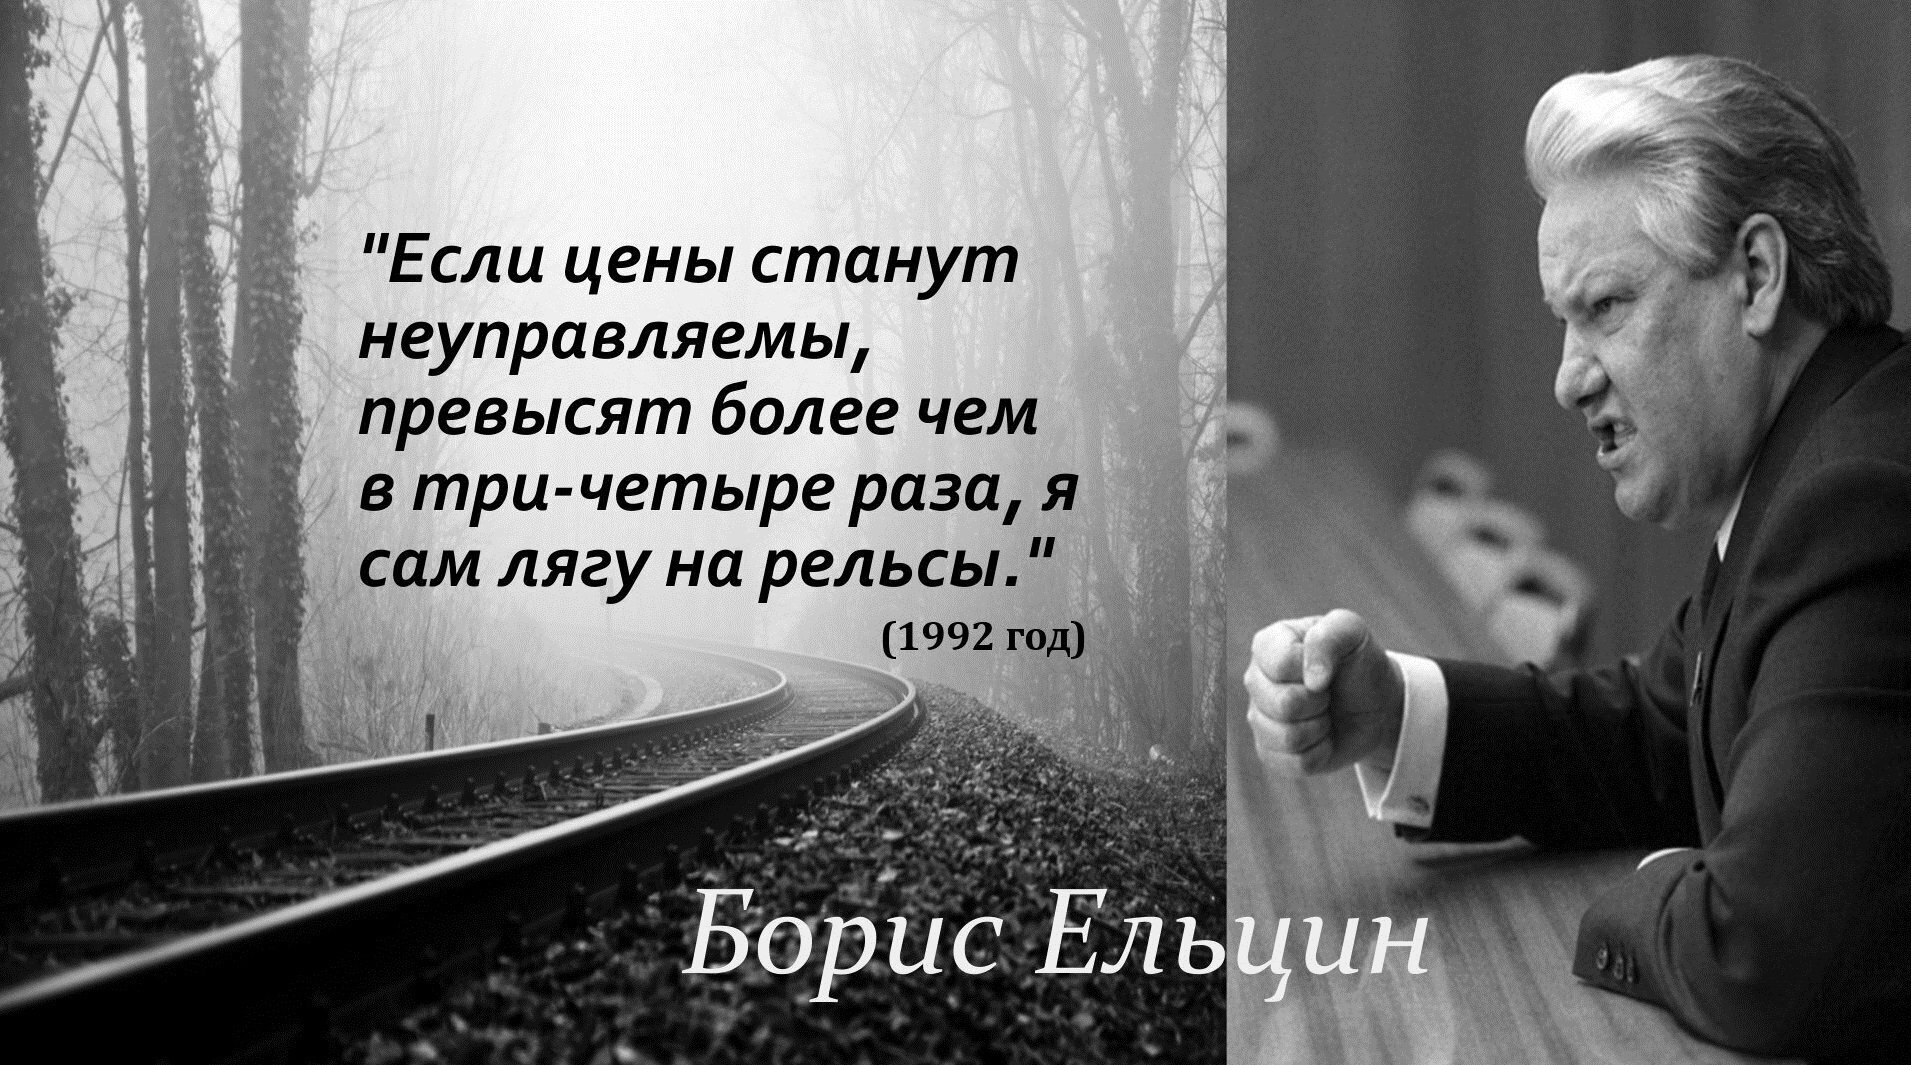 В четыре раза превышающей. Ельцин лягу на рельсы. Ельцин обещал лечь на рельсы. Ельцин положу руку на рельсы.